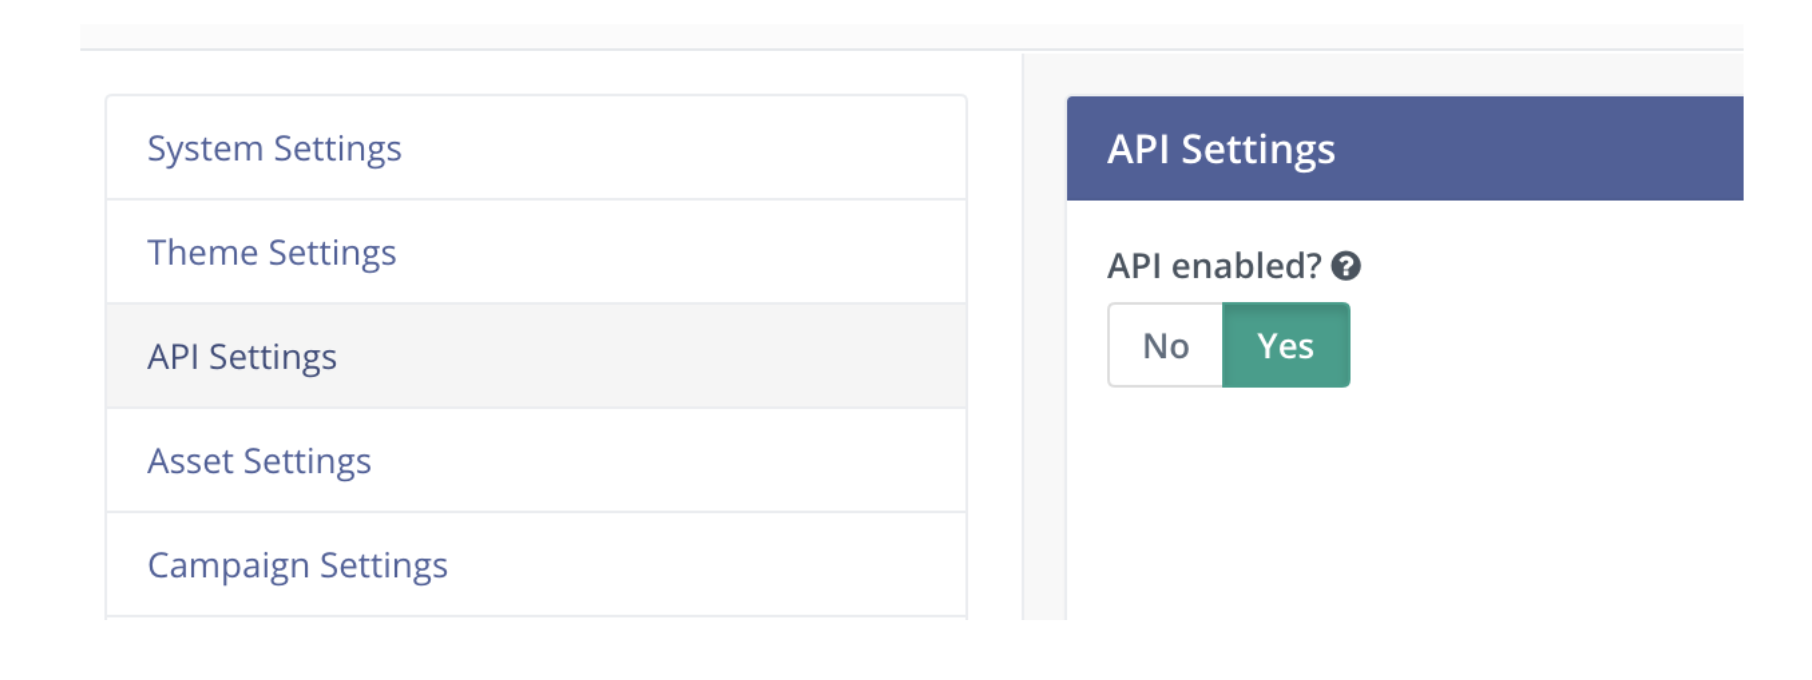 enable_API.png